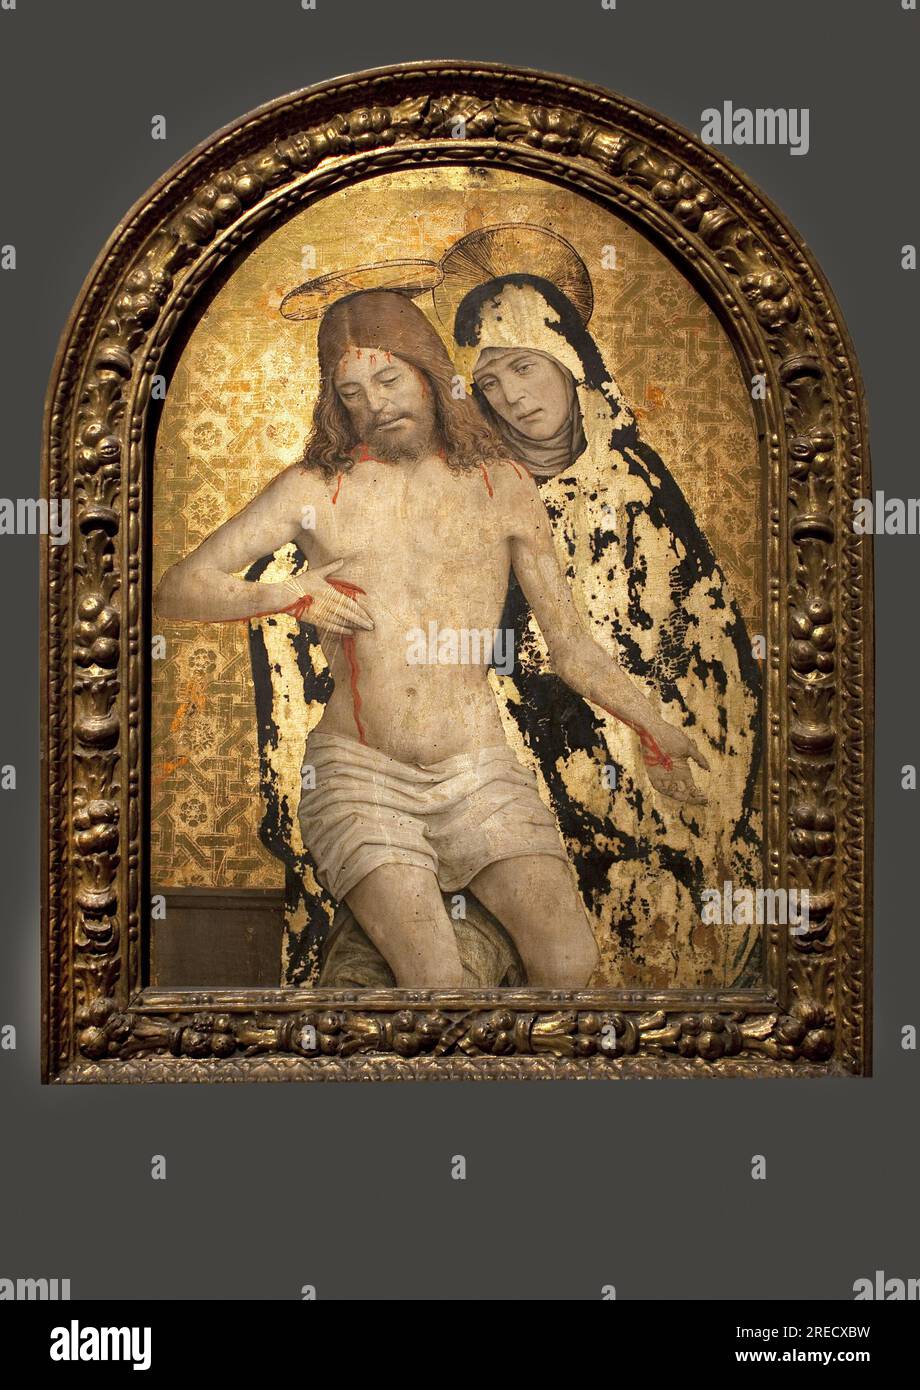 Pieta (Vierge de pitie). Peinture de Giovanni Martino Spanzotti (vers 1455-1526 ou 1528), huile sur bois, 15-16e siecle, art italien. Musee des beaux arts de Budapest (Hongrie). Stock Photo